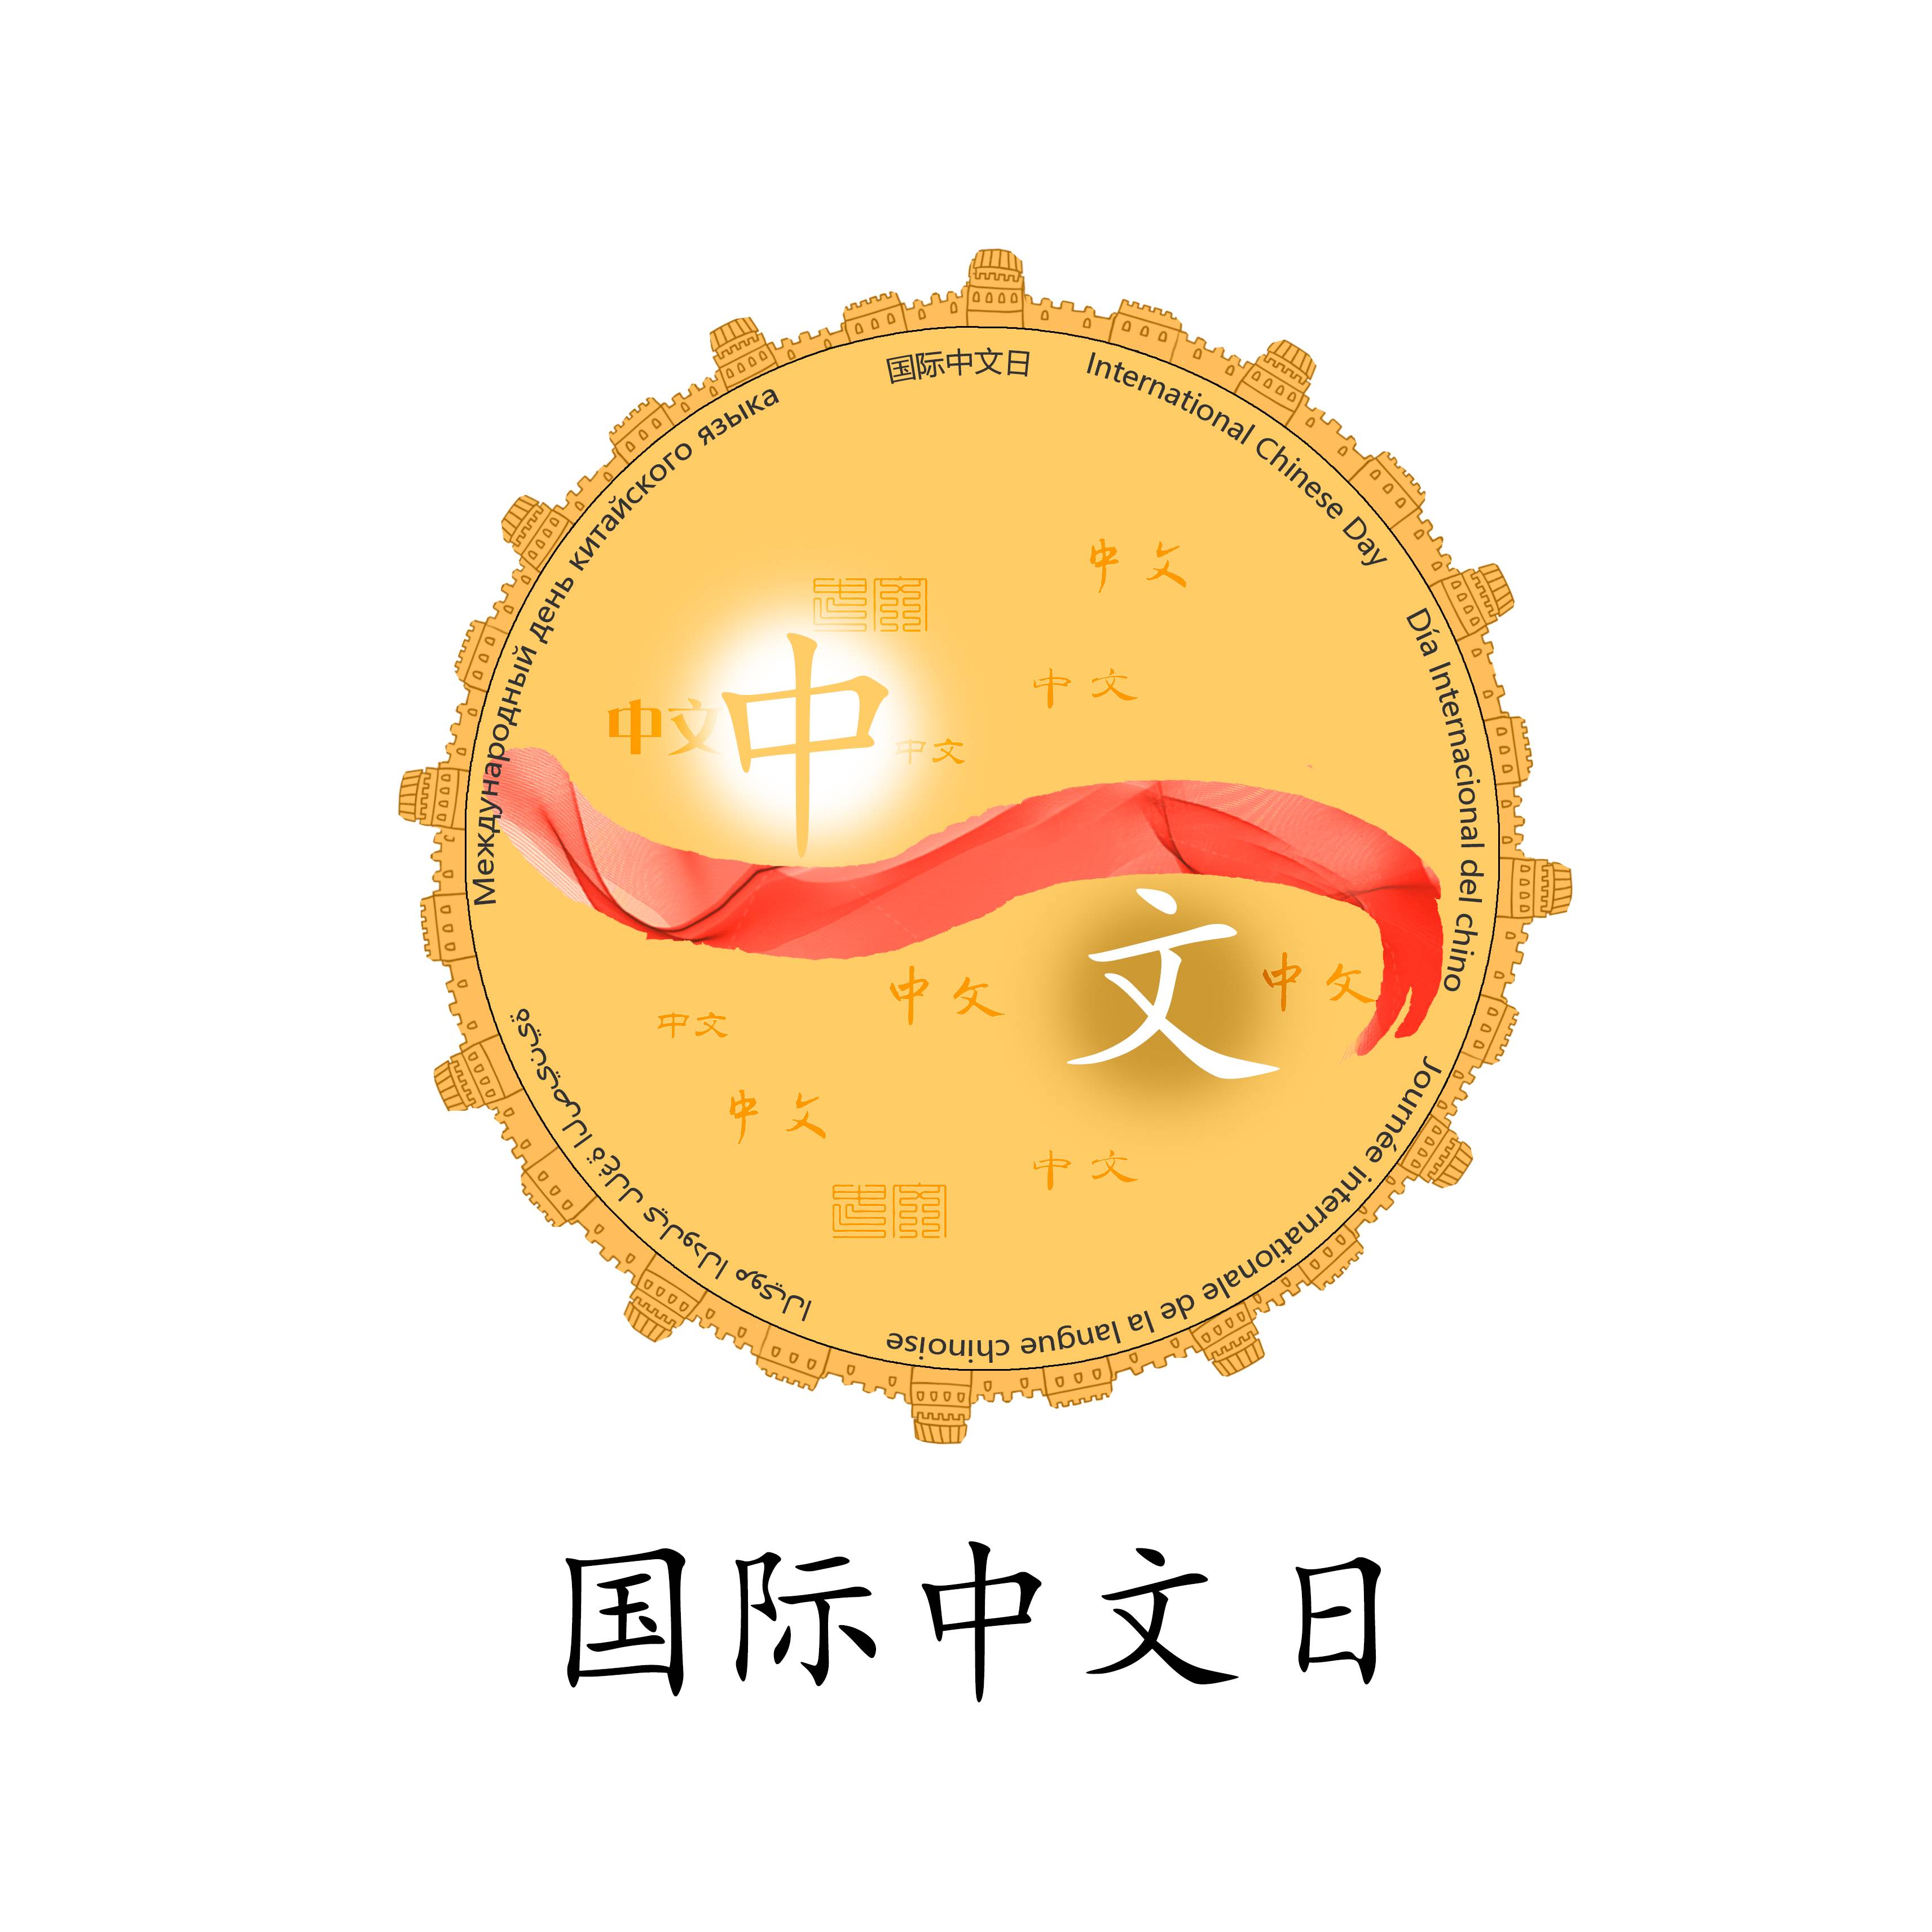 国际中文日会徽设计-李露